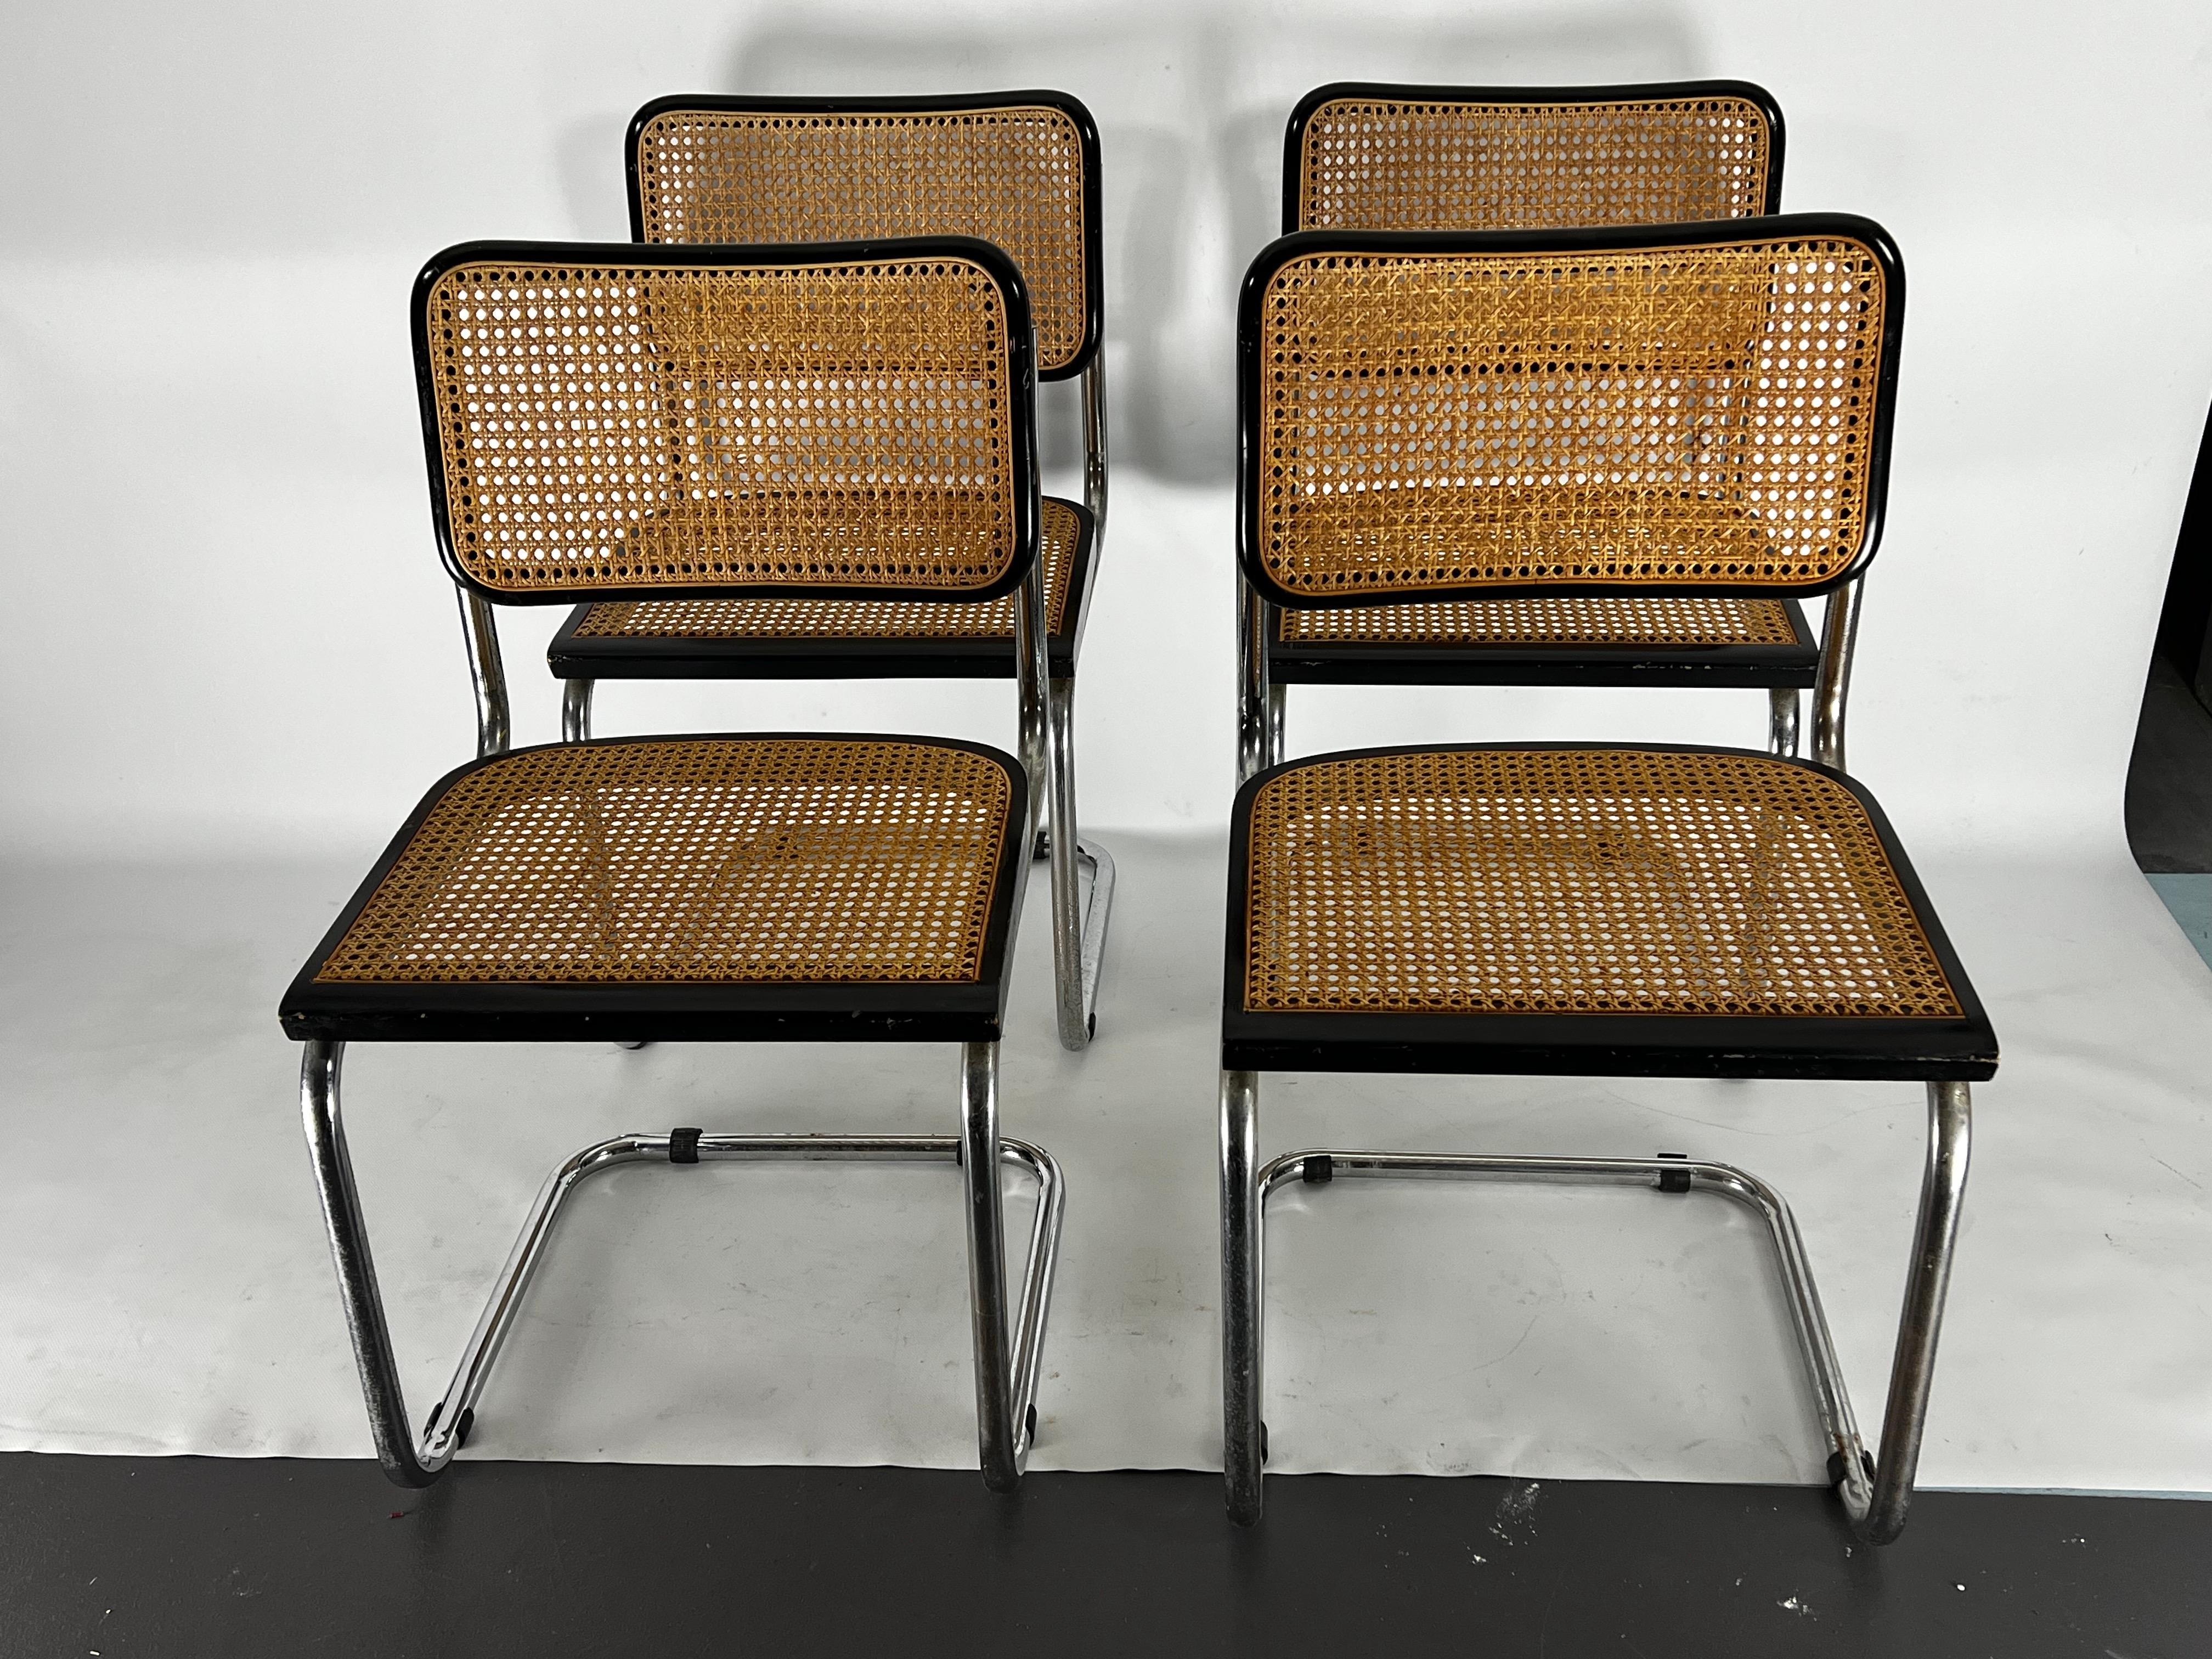 Quatre chaises Cesca conçues par Marcel Breuer et produites en Italie par Gavina dans les années 60.
Très bon état vintage avec des traces normales d'âge et d'utilisation. Légère oxydation sur le chrome. 
H siège 46 cm.